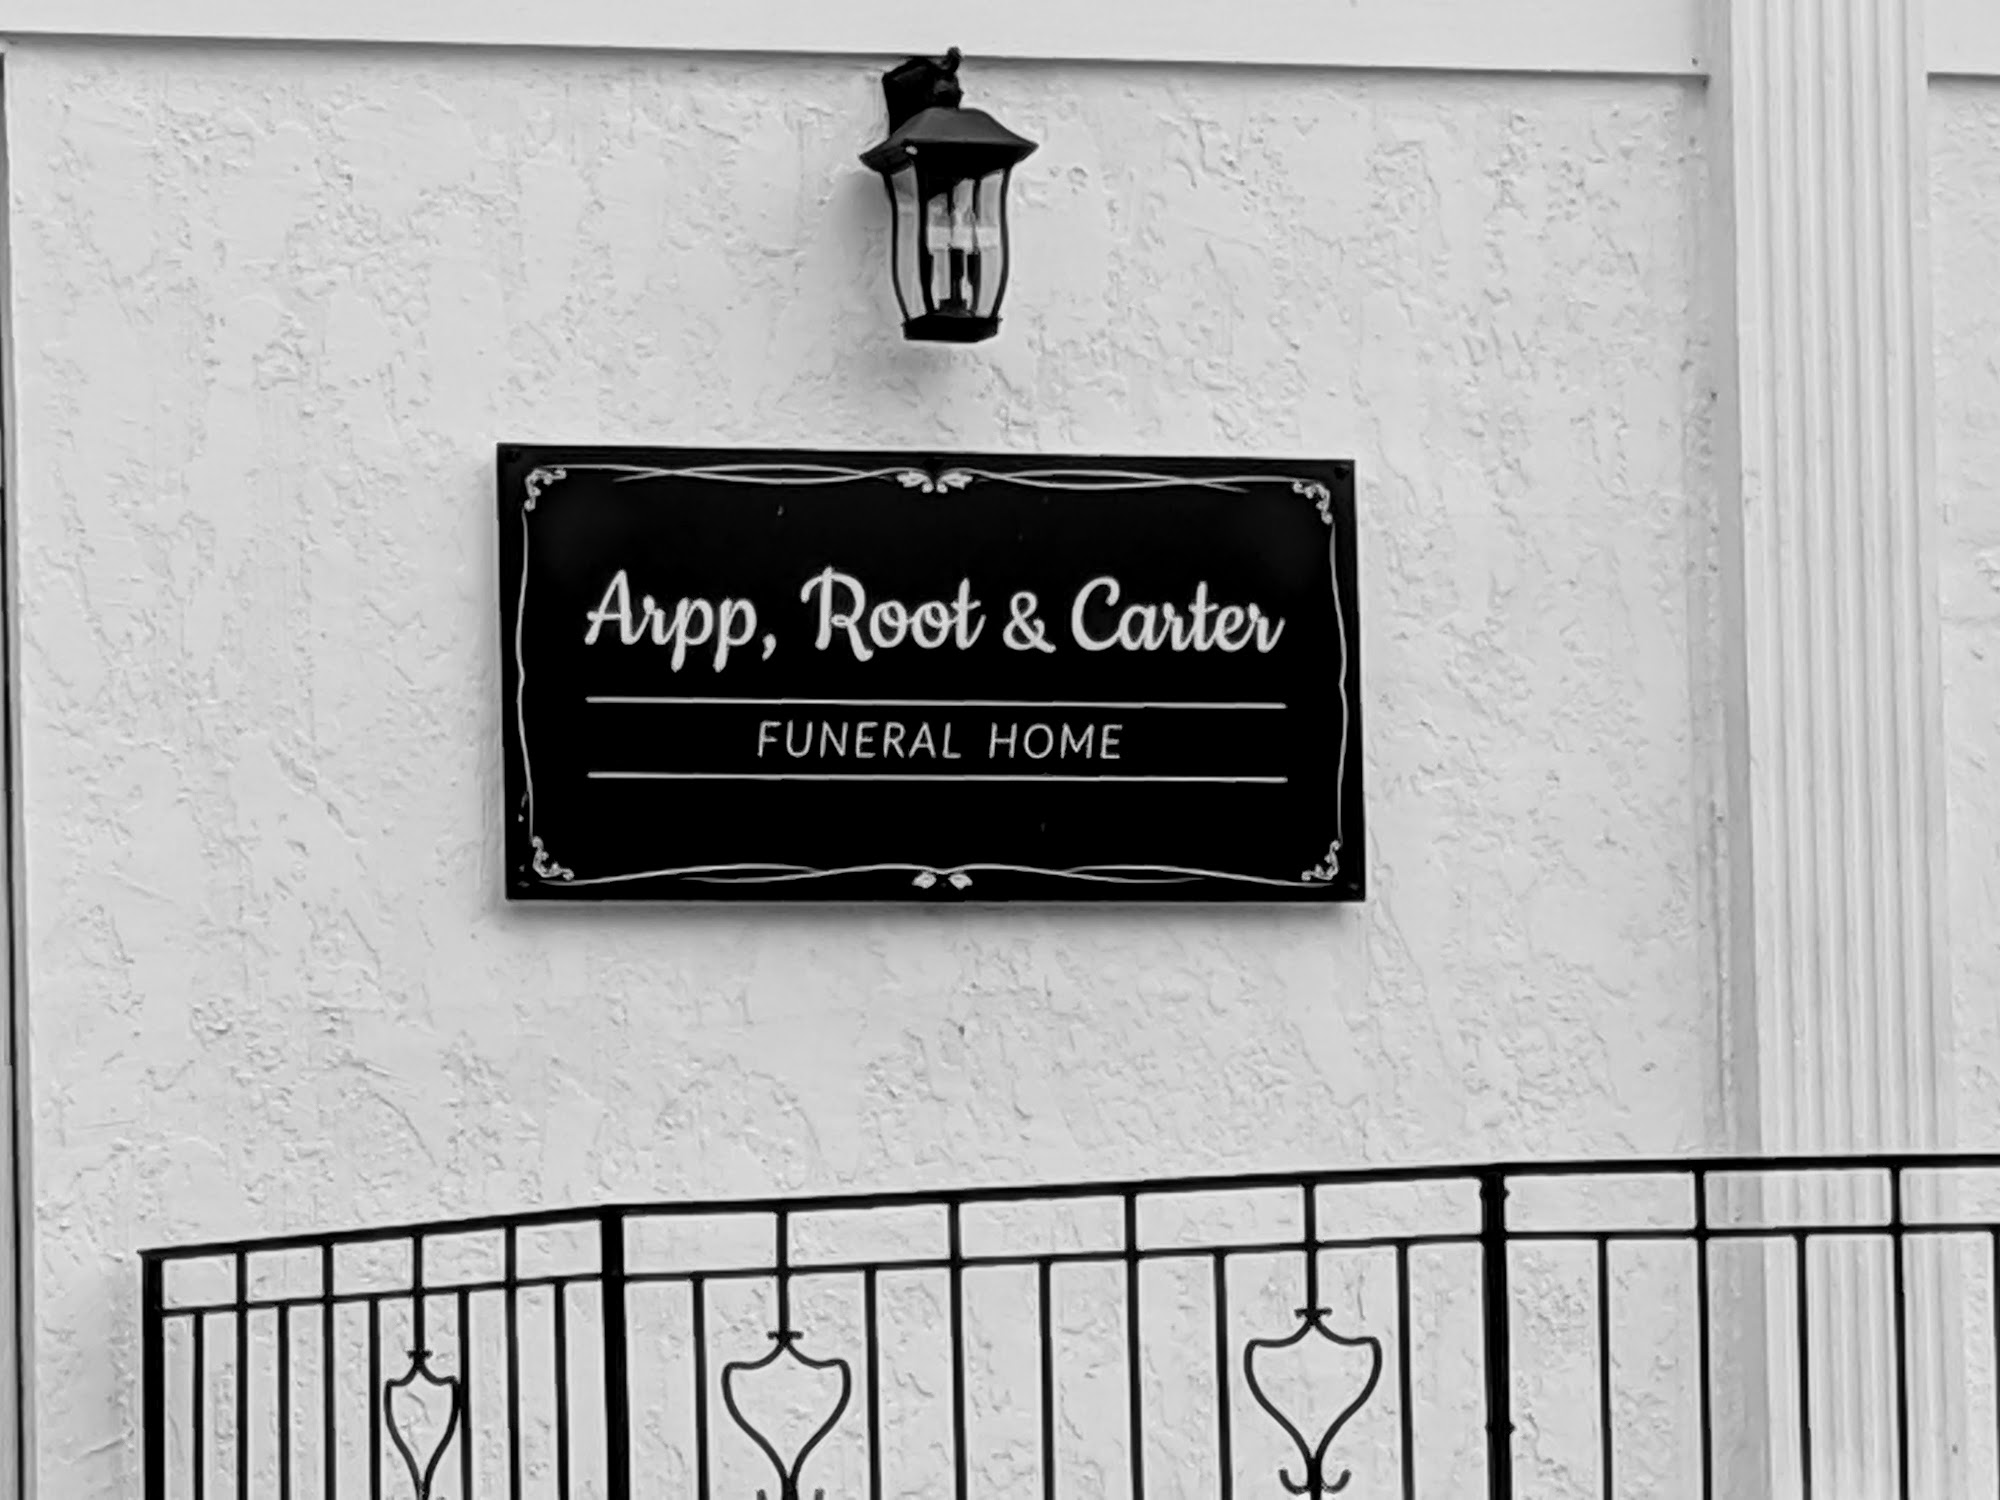 Arpp, Root & Carter Funeral Home 29 N Main St, Germantown Ohio 45327